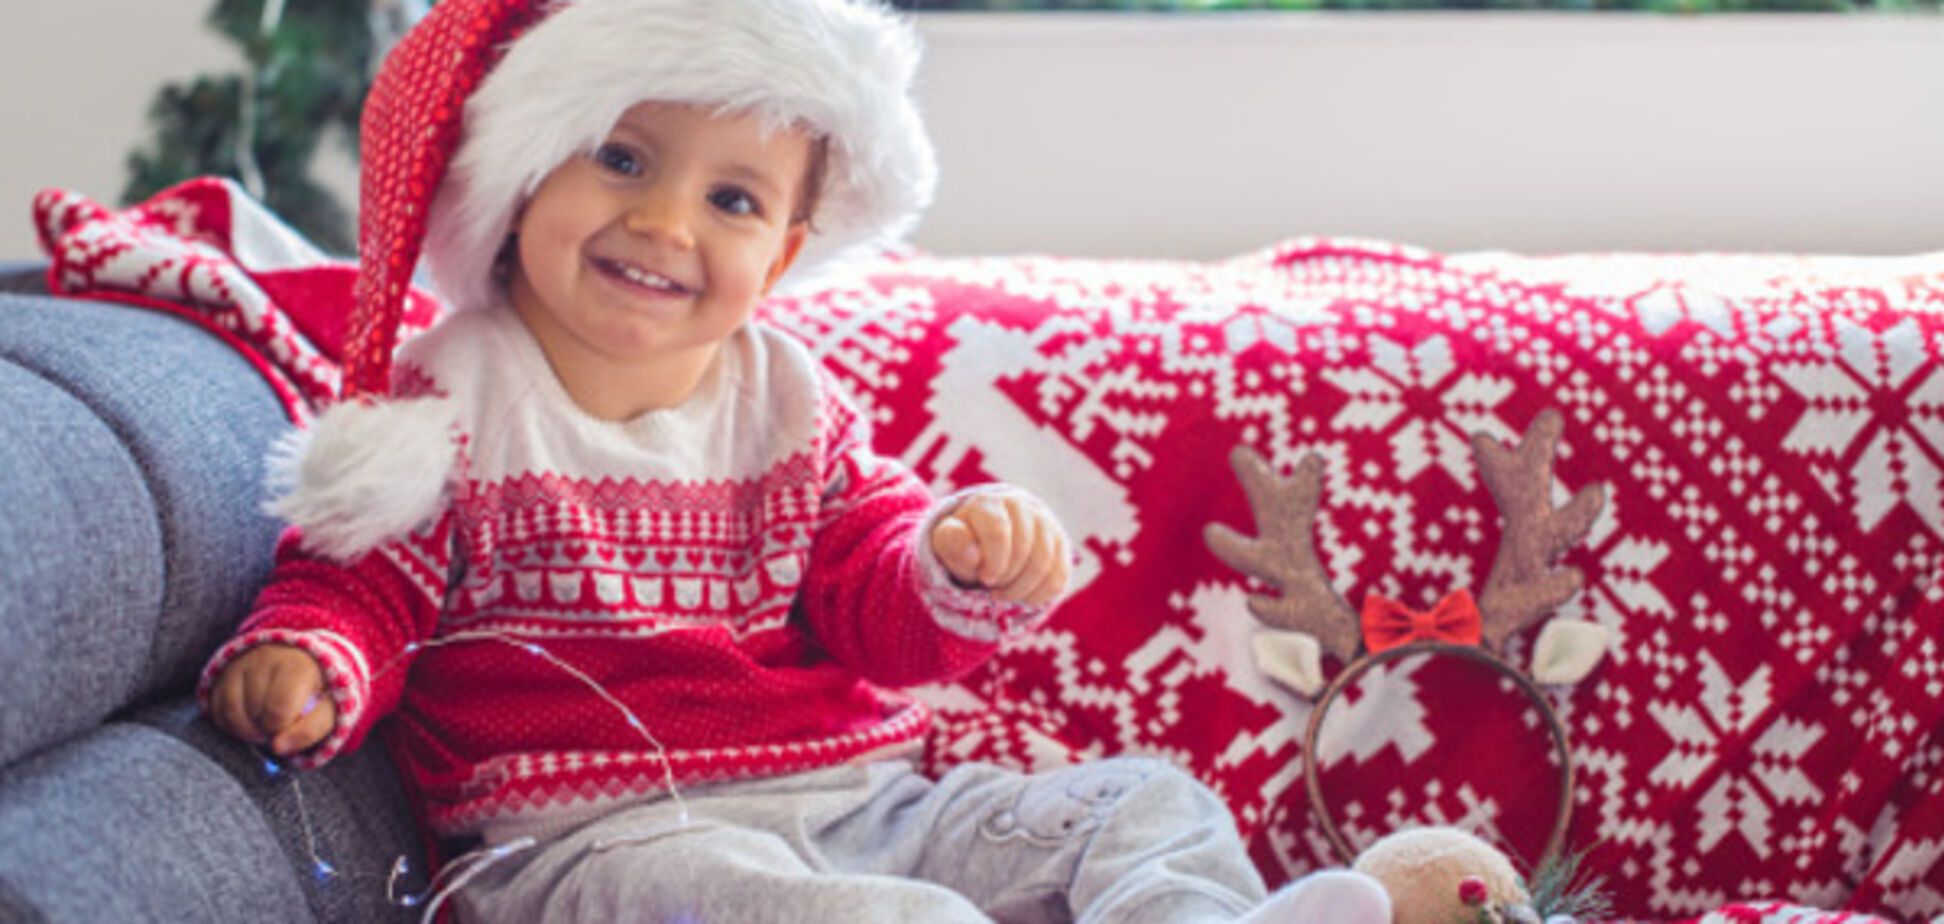 Дитяче новорічне фотографування: найсмішніші моменти